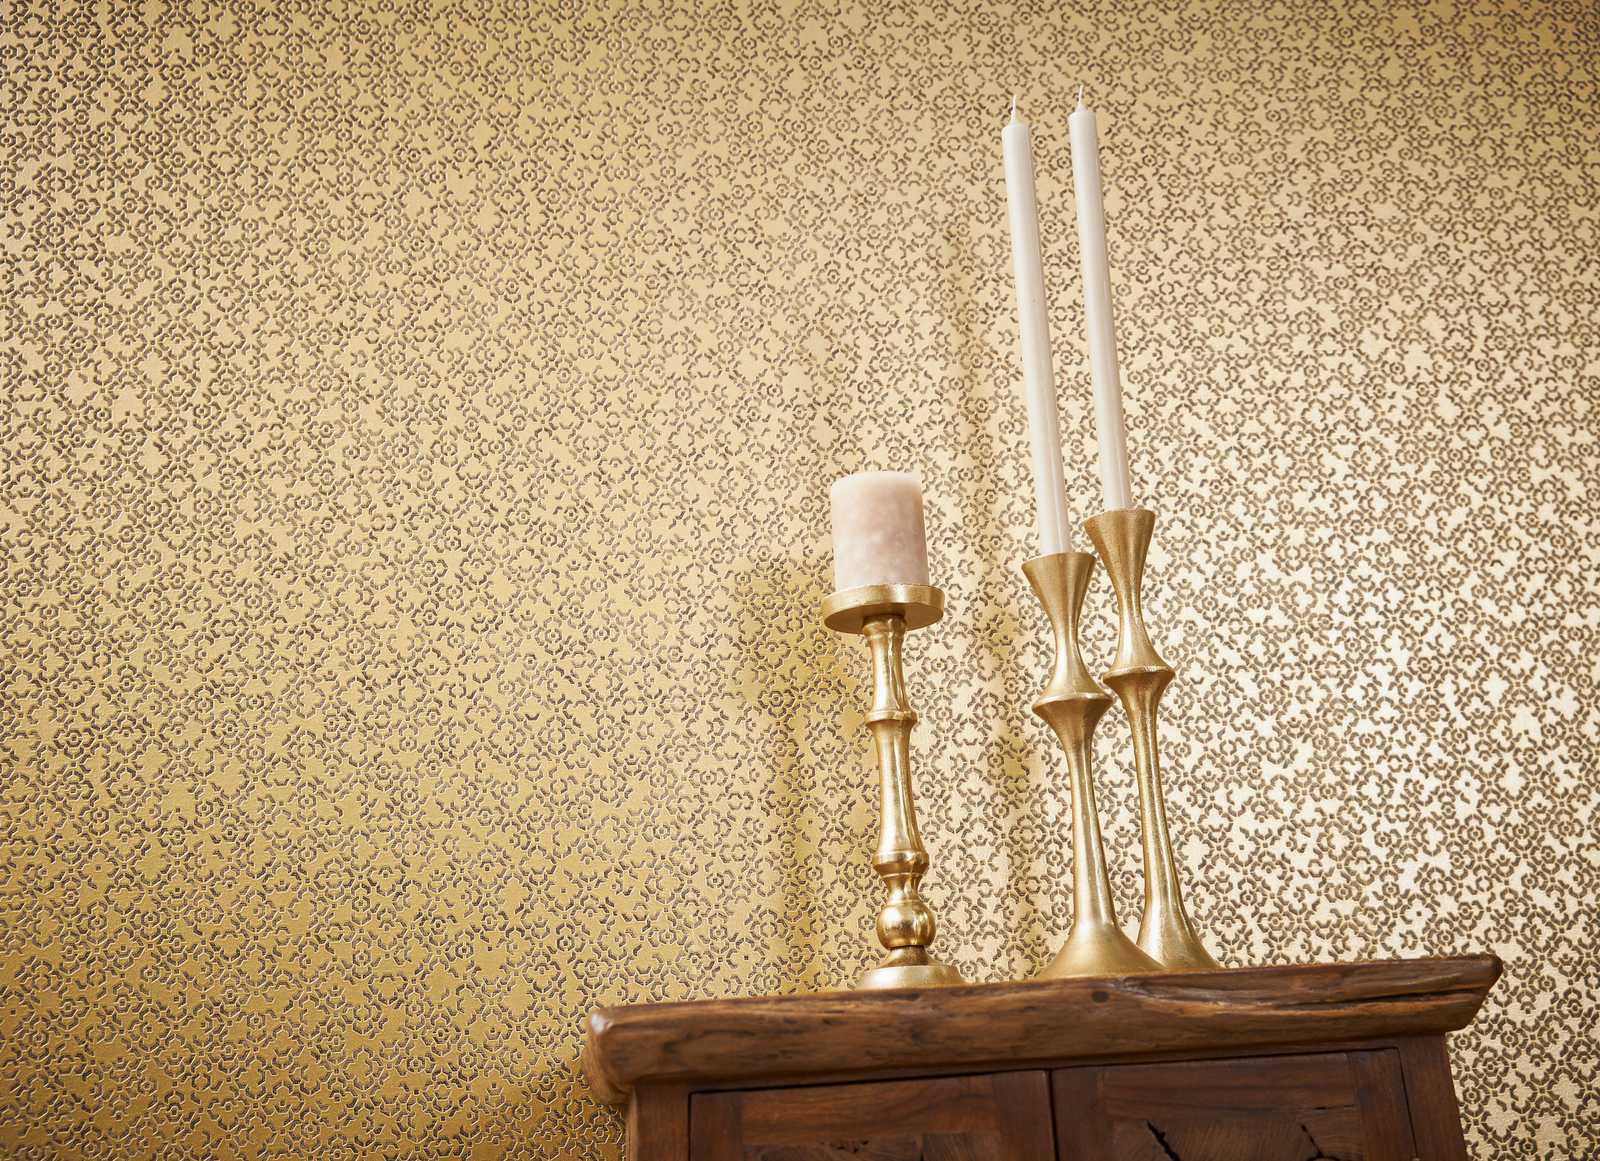             Goldene Mustertapete mit 3D-Effekt & Metallic-Glanz – Braun, Gelb, Metallic
        